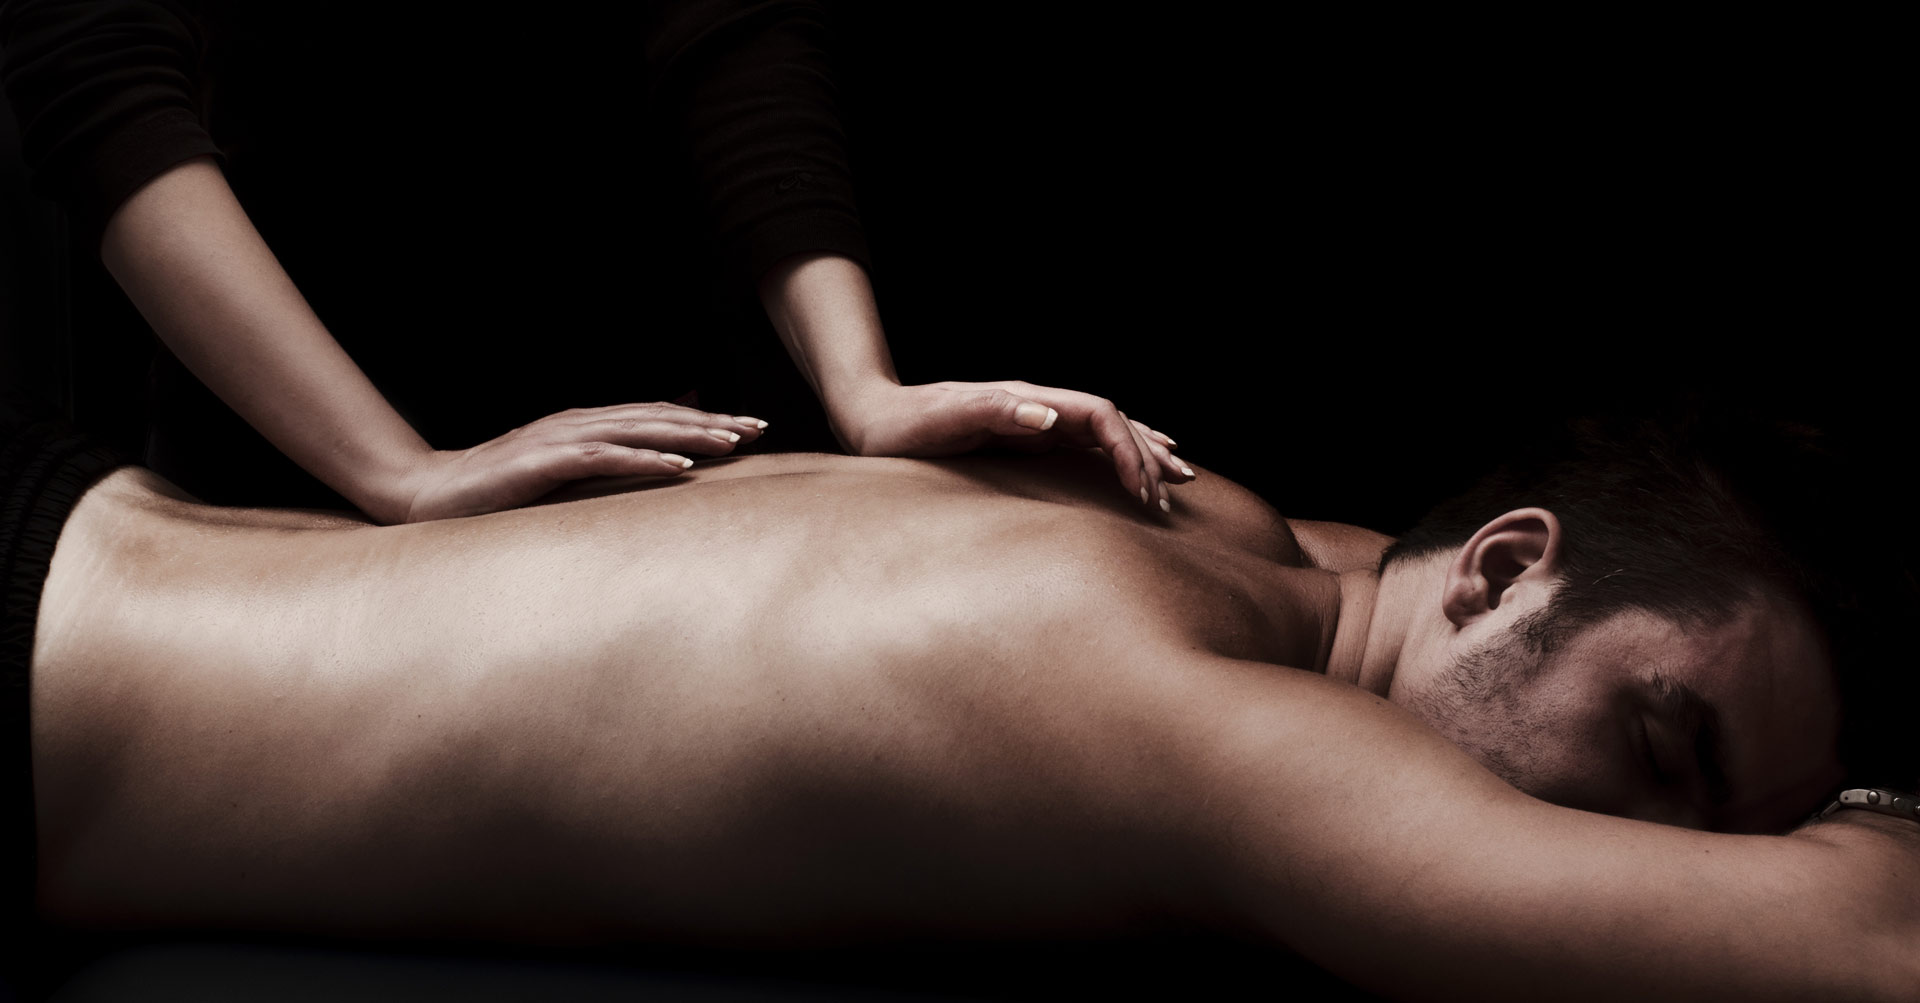 Arizona erotic massage full body for men